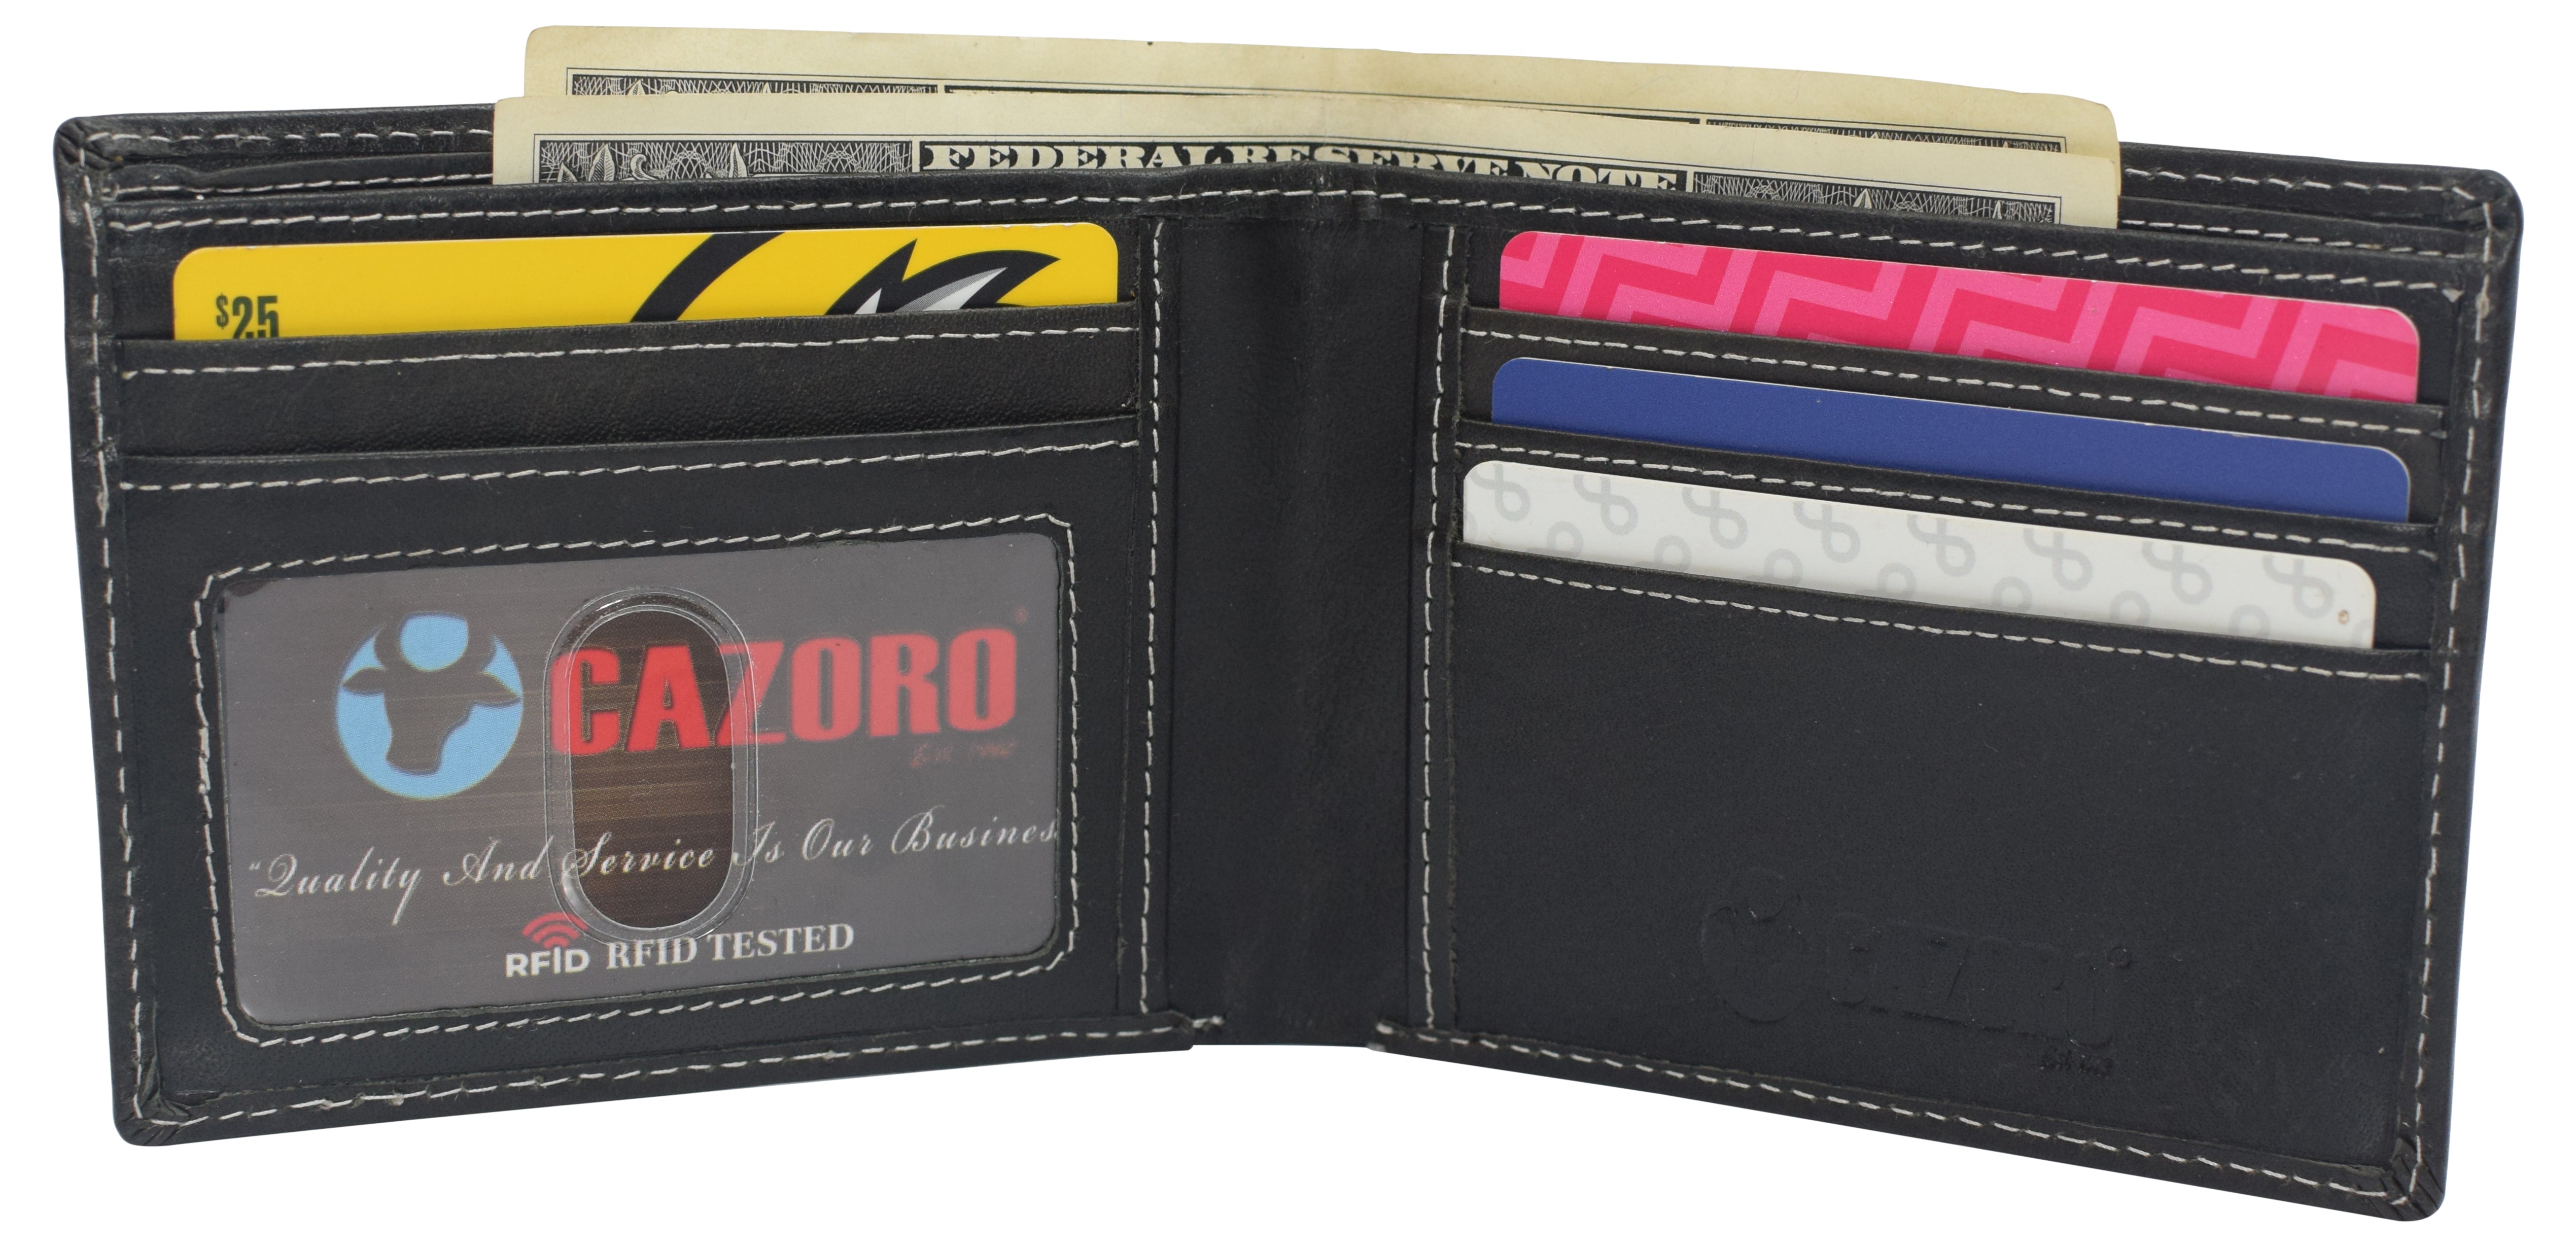 Men's Small Wallet Leather Slim Bifold Credit Card Holder Front-Pocket  Wallet US 